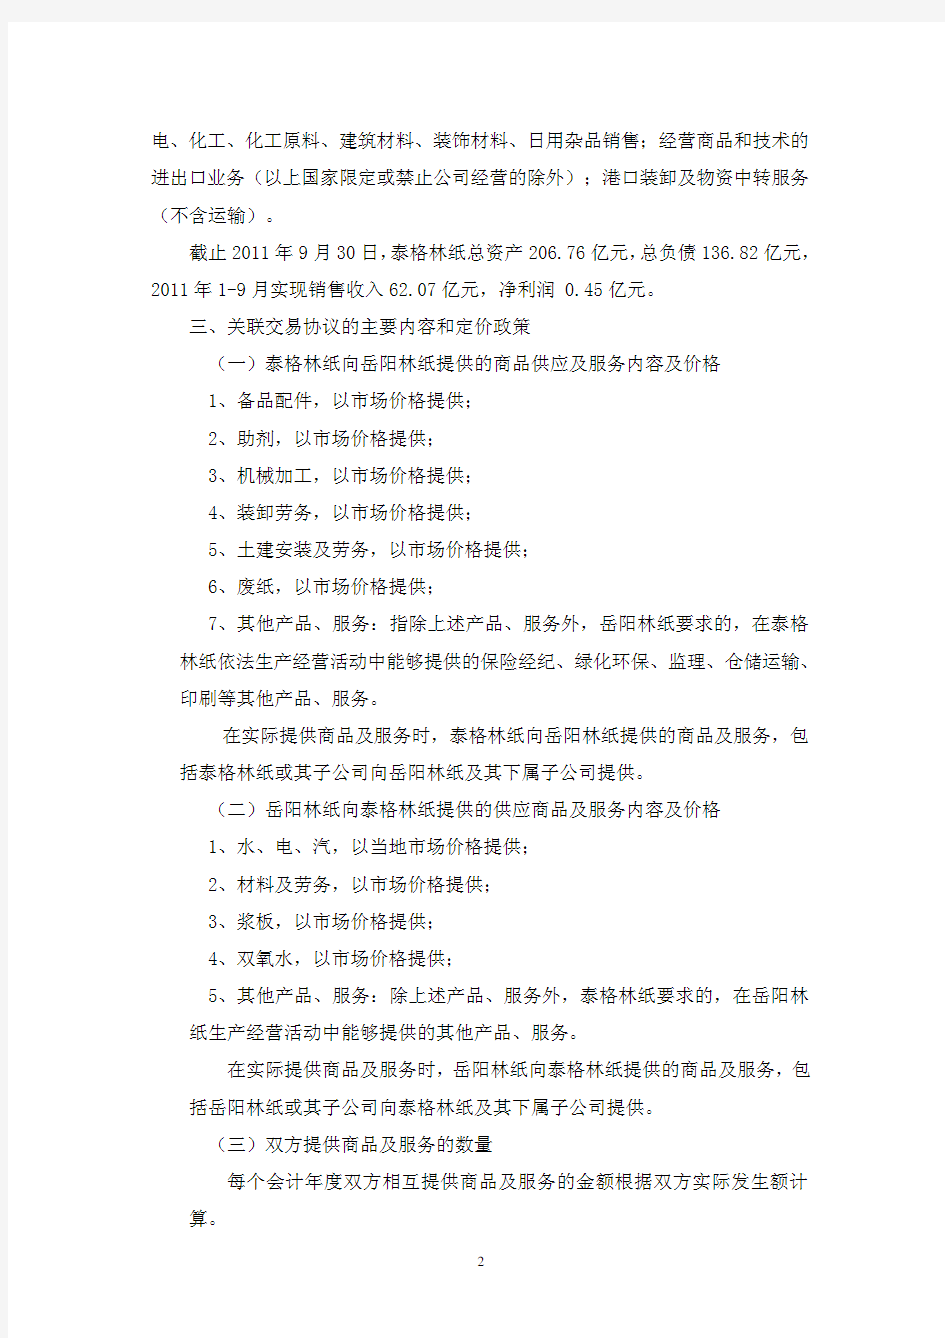 岳阳林纸股份有限公司关于签订《泰格林纸集团股份有限公司与泰格林